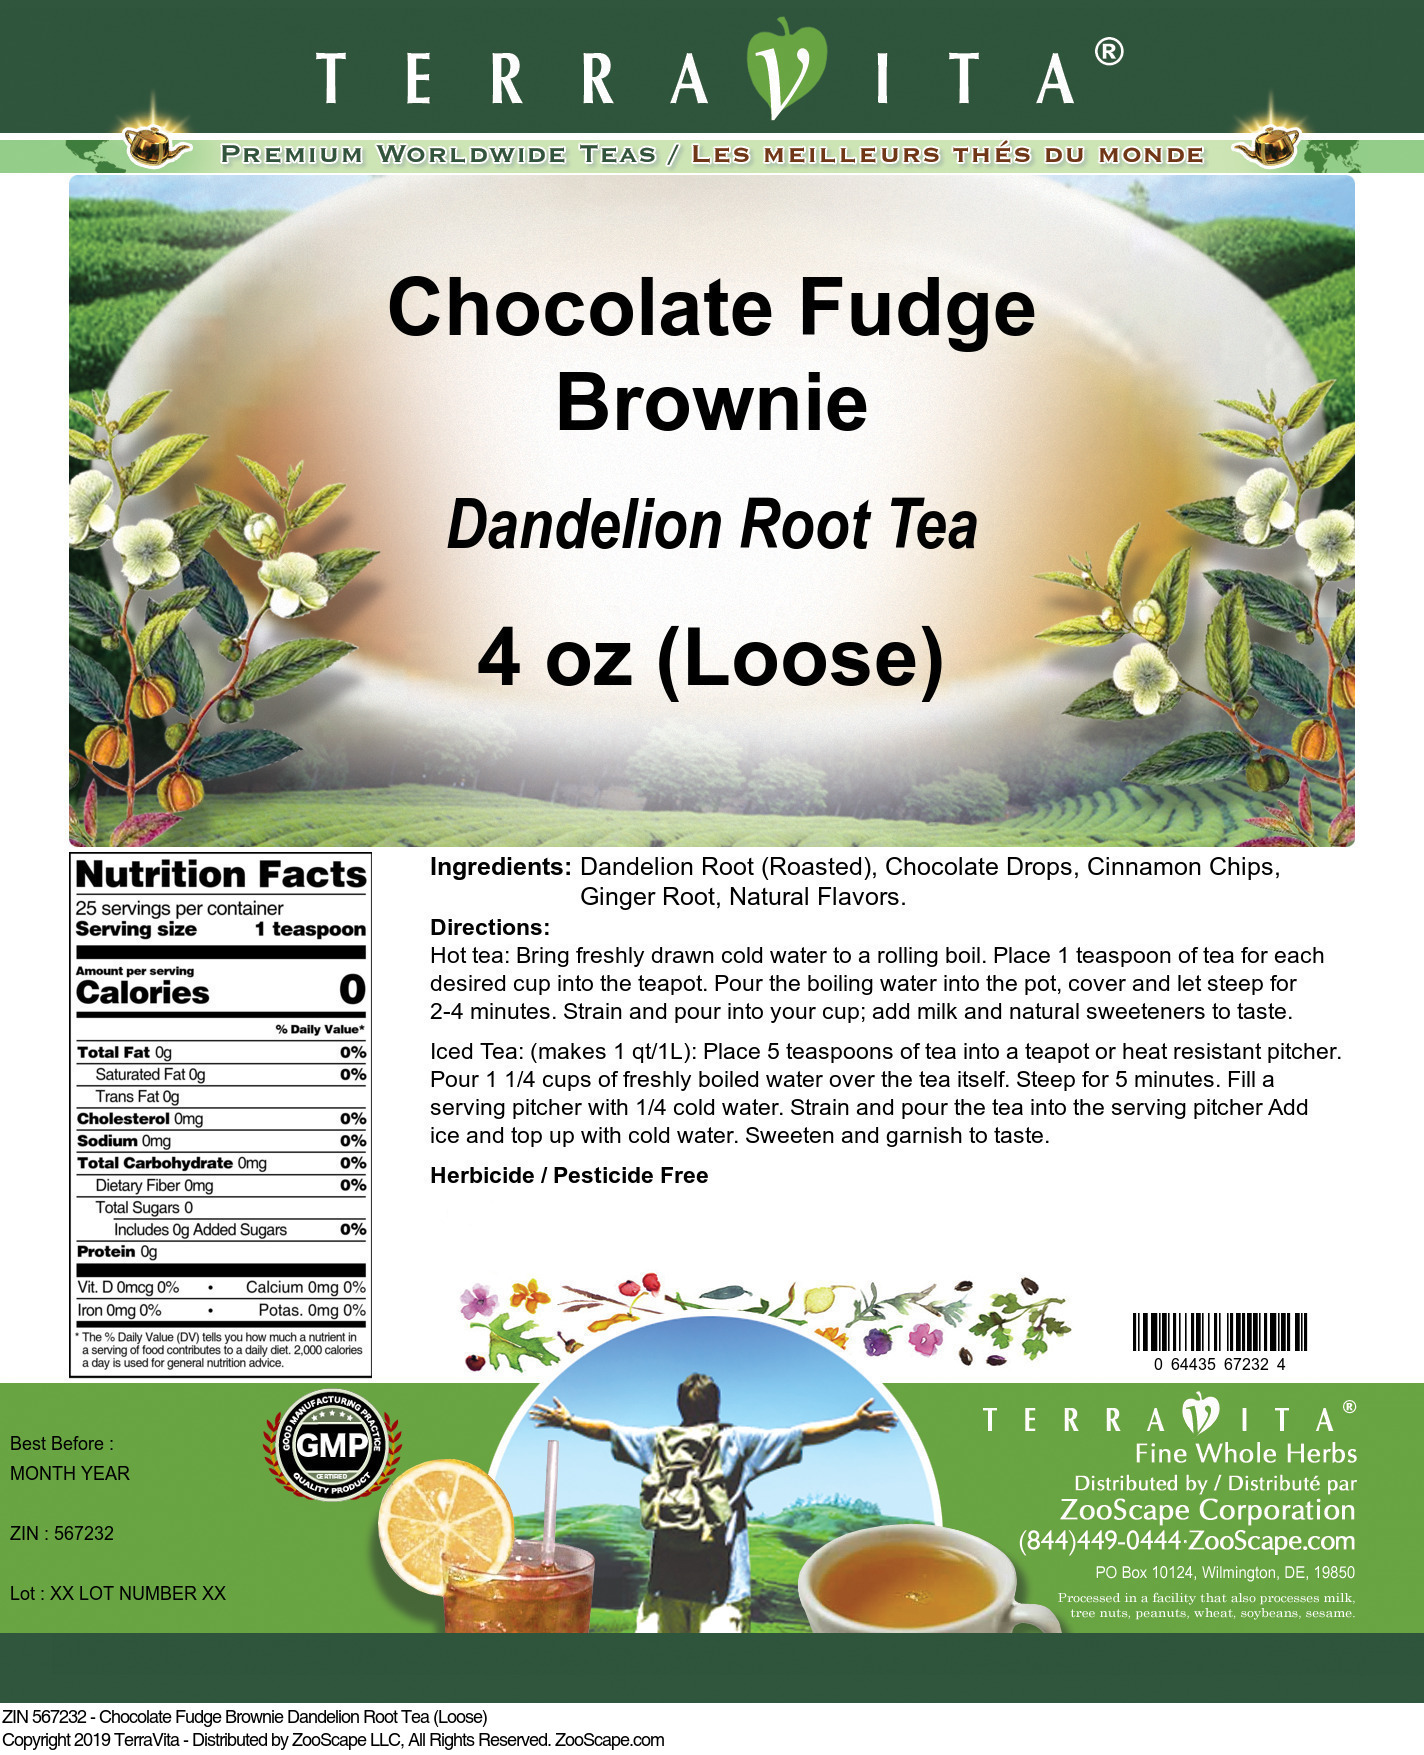 Chocolate Fudge Brownie Dandelion Root Tea (Loose) - Label